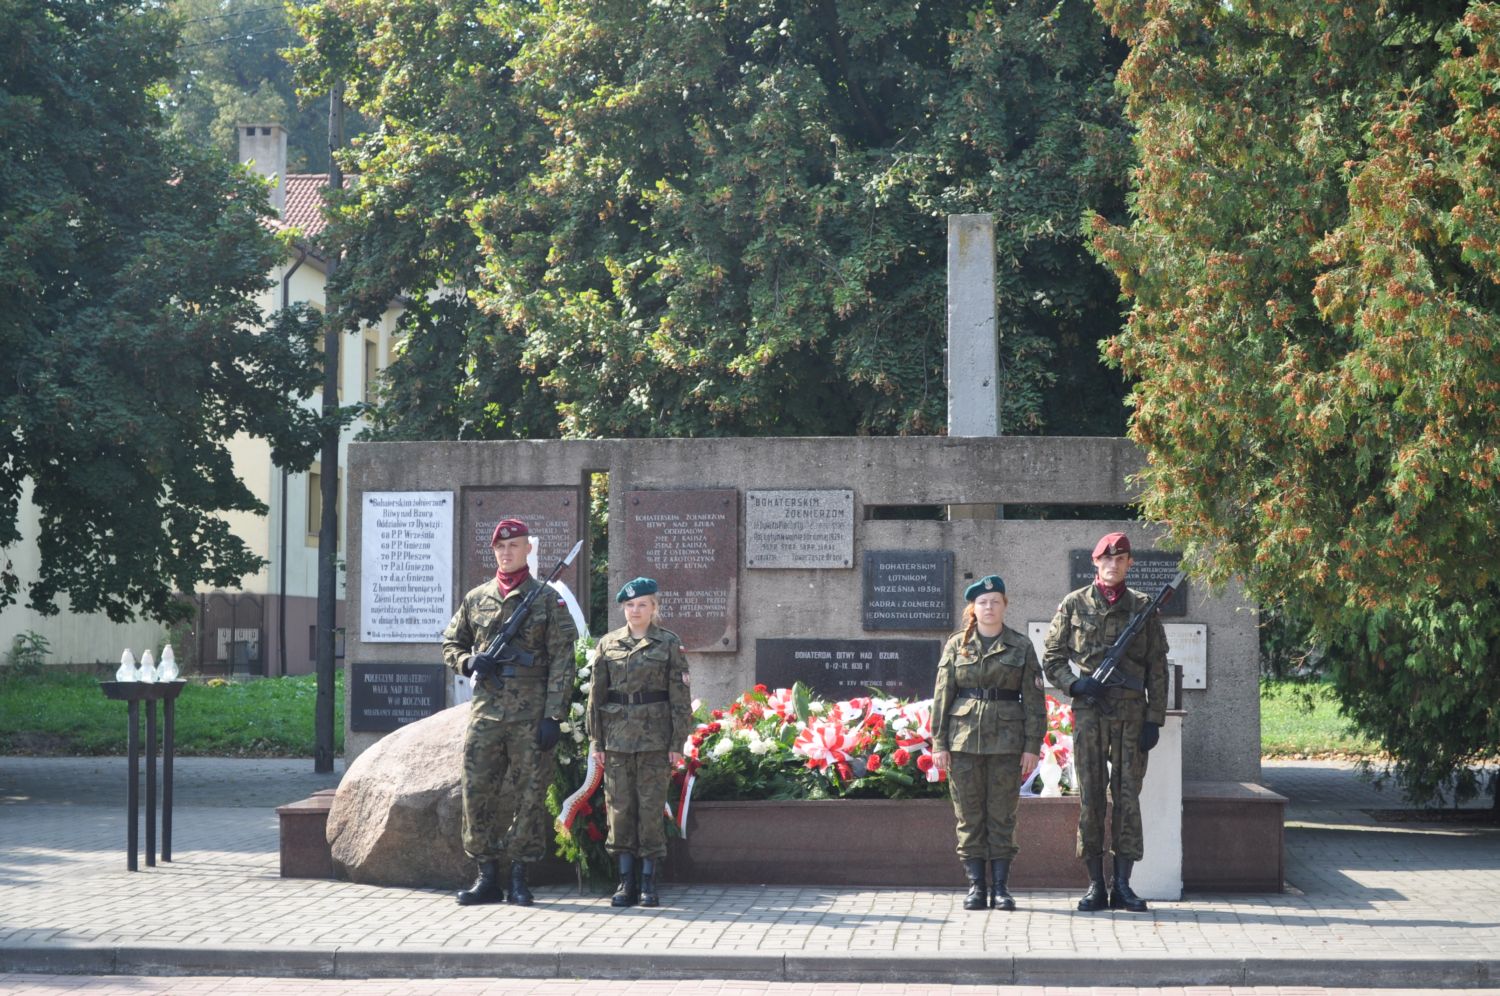 Obchody 75. rocznicy Bitwy nad Bzurą - Zdjęcie główne